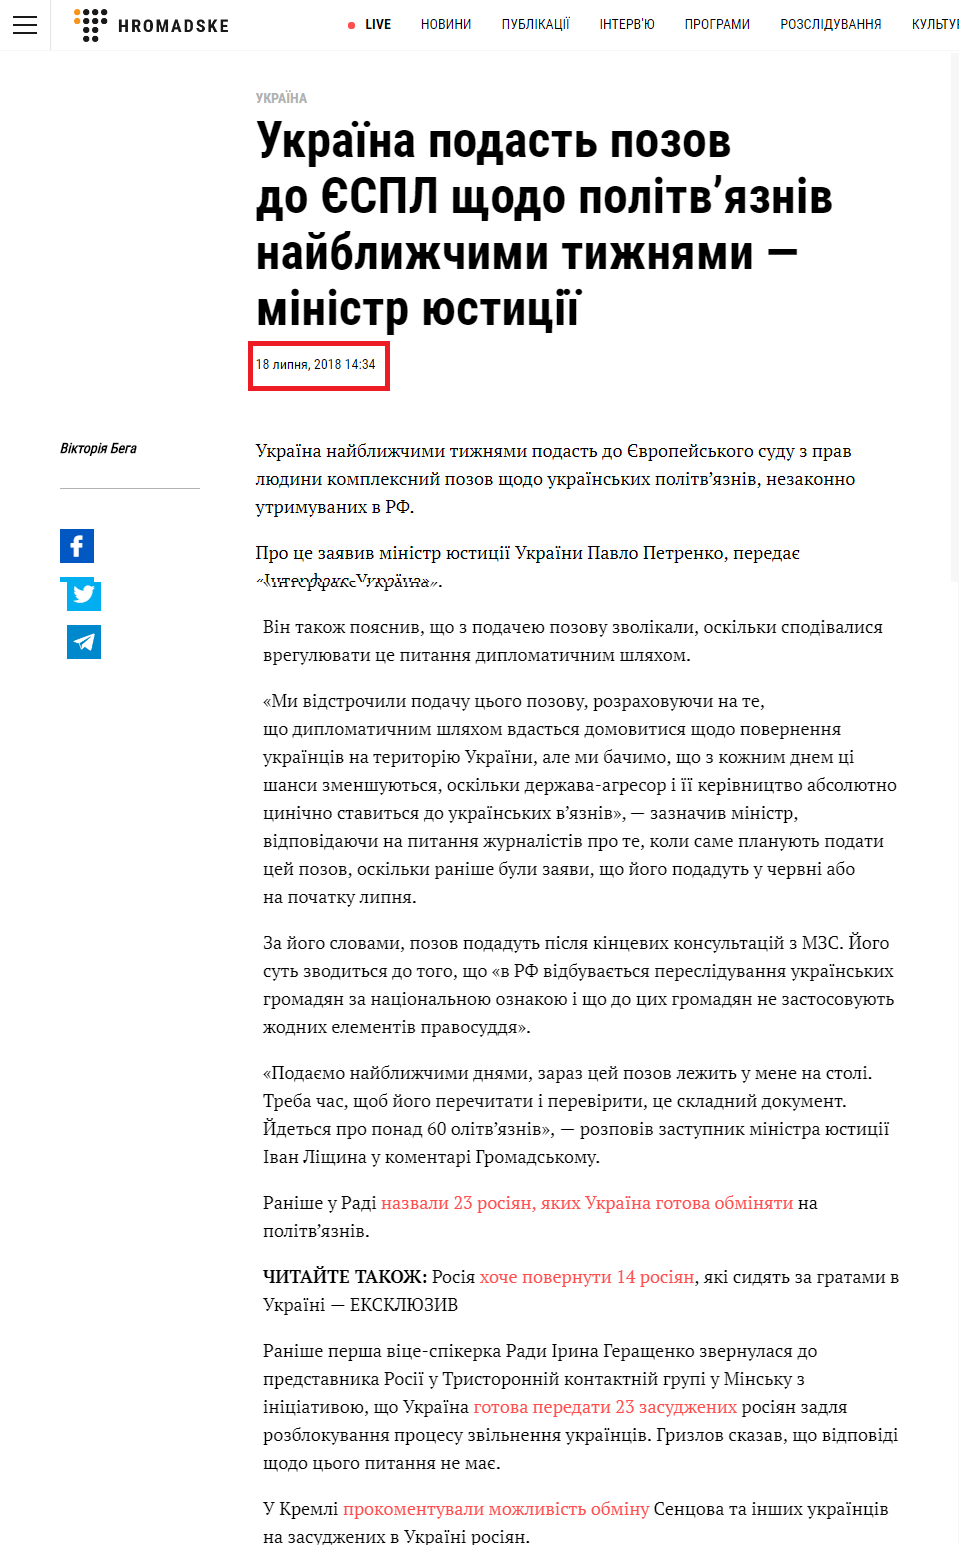 https://hromadske.ua/posts/ukraina-podast-do-yespl-pozov-shchodo-politviazniv-naiblyzhchymy-tyzhniamy-ministr-iustytsii